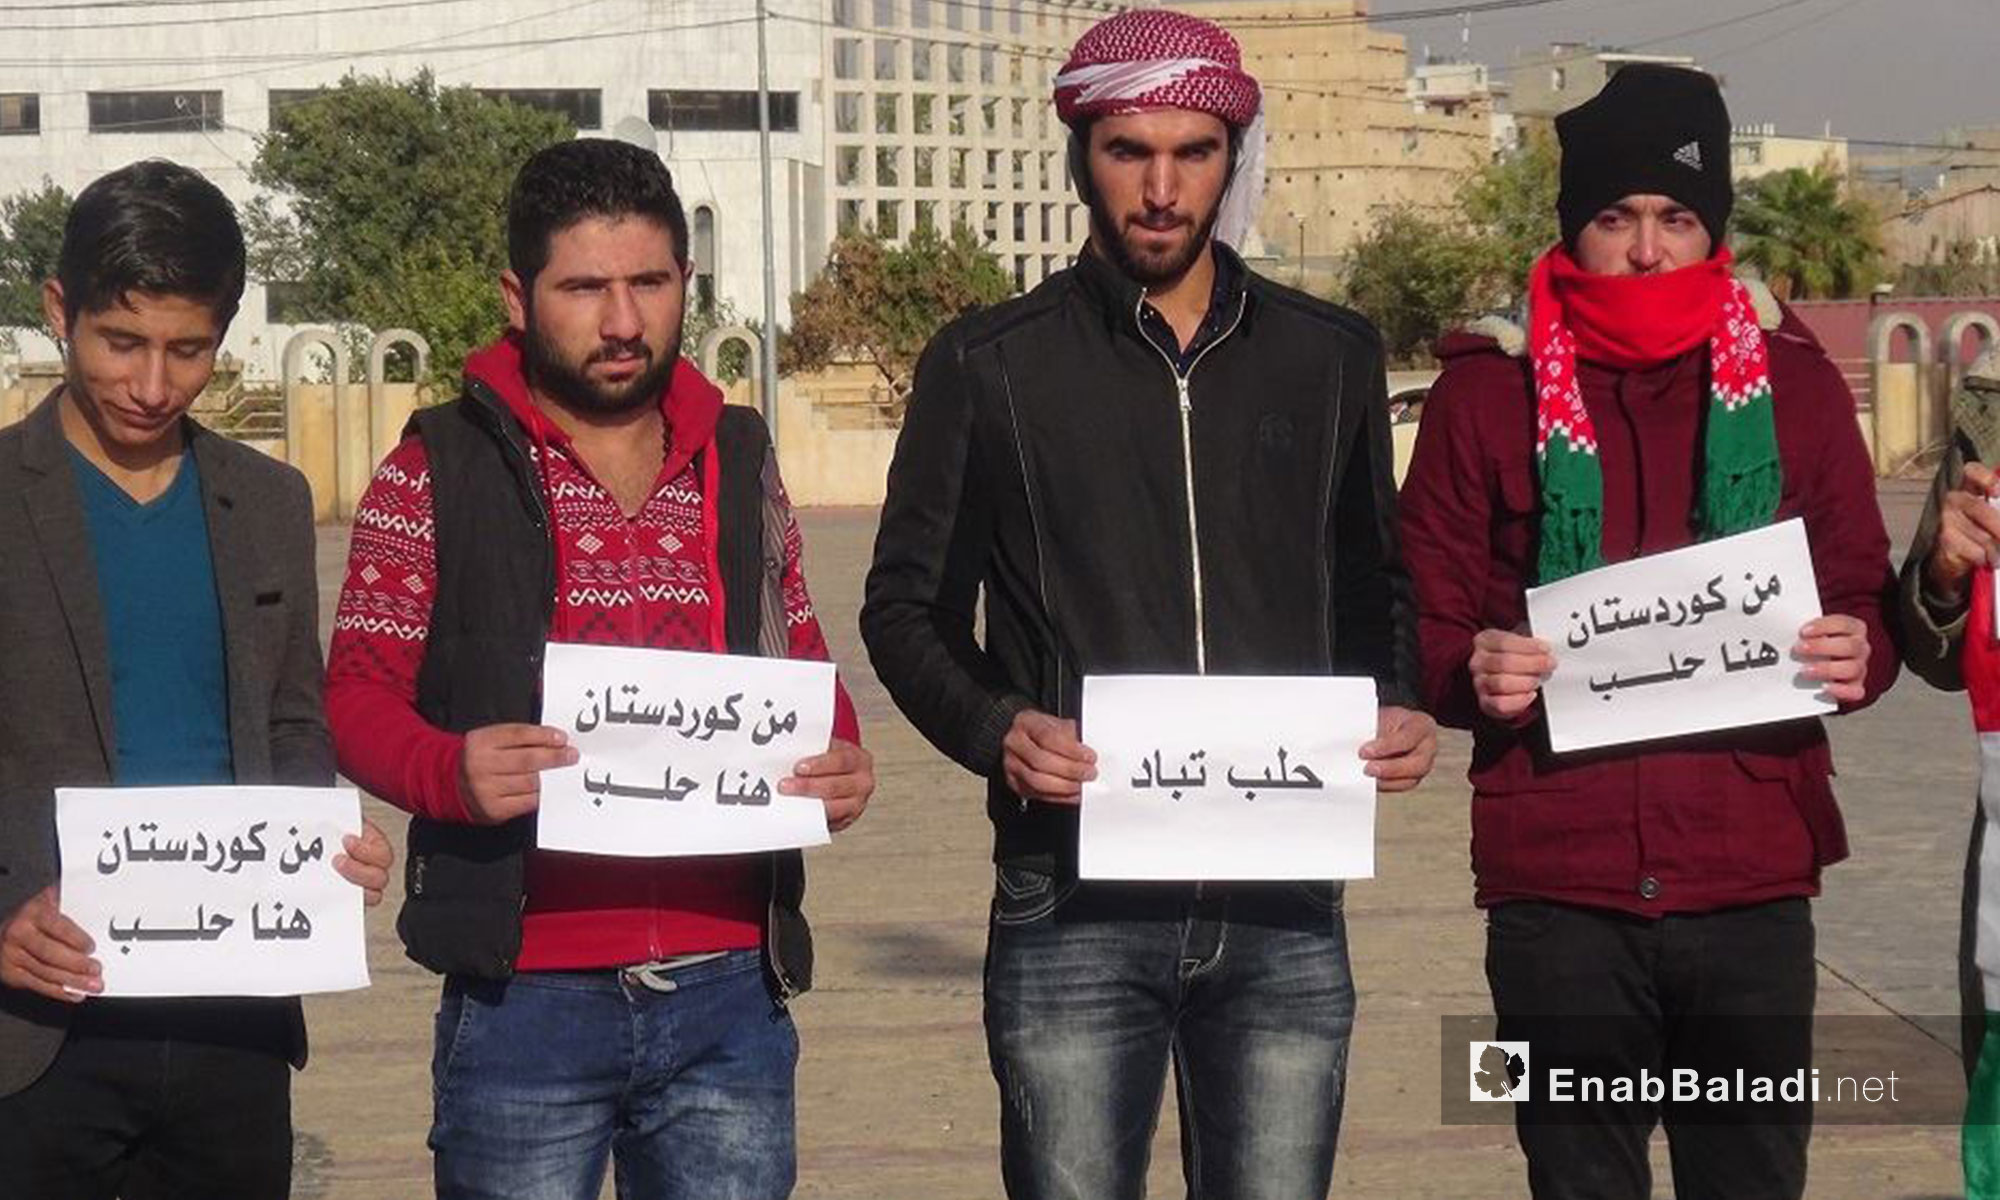 ناشطون أكراد يتضامنون مع حلب من أربيل بكردستان العراق - 16 كانون الأول 2016 (عنب بلدي)